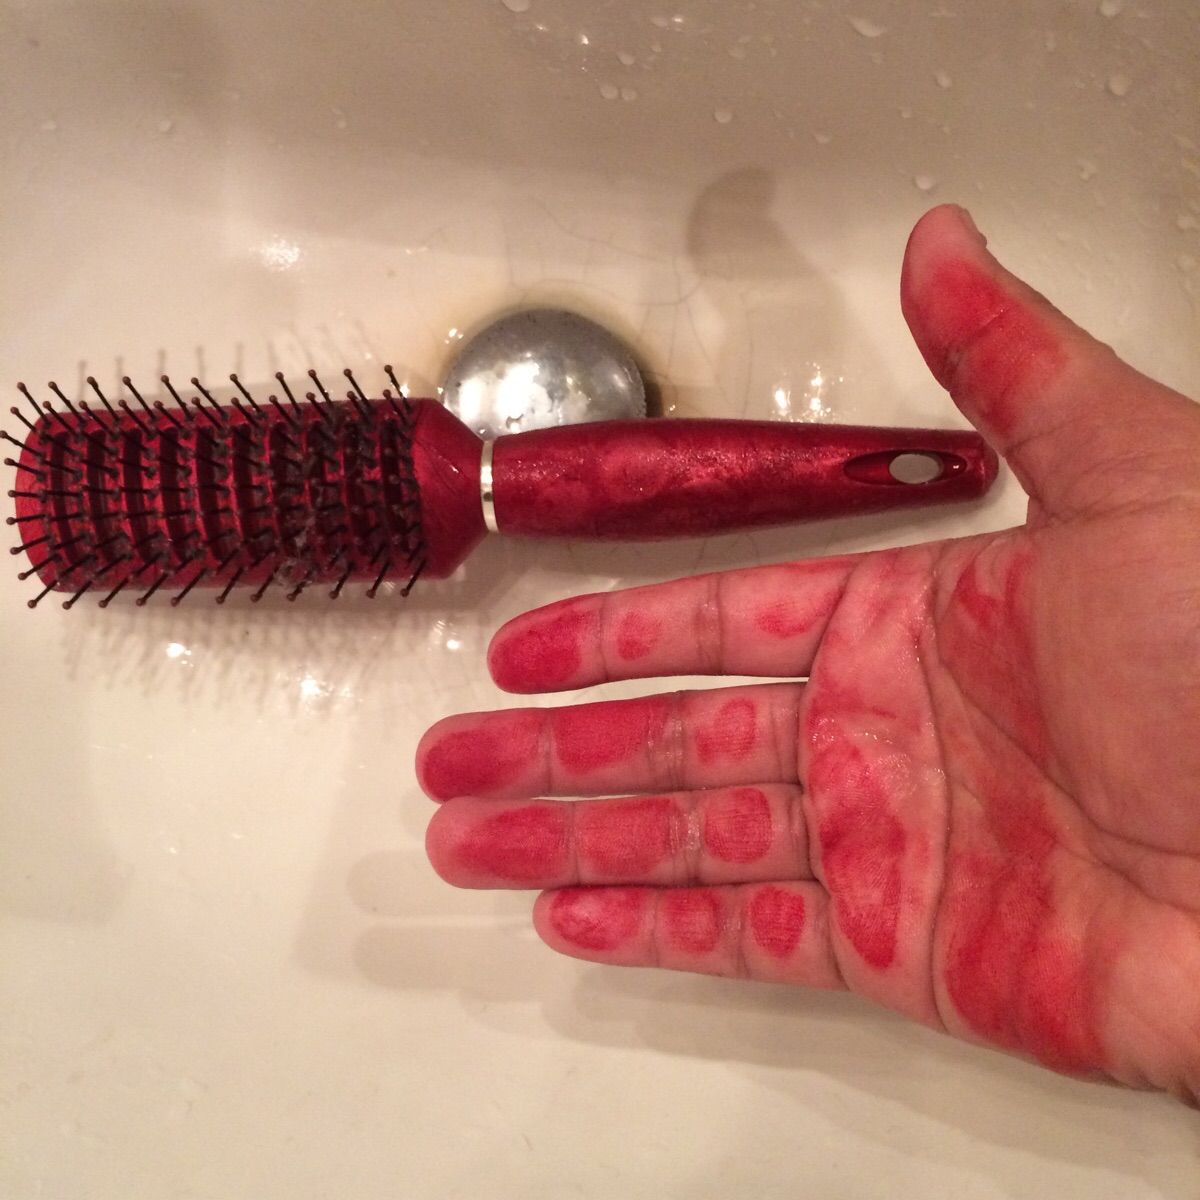 Hairbrush handle